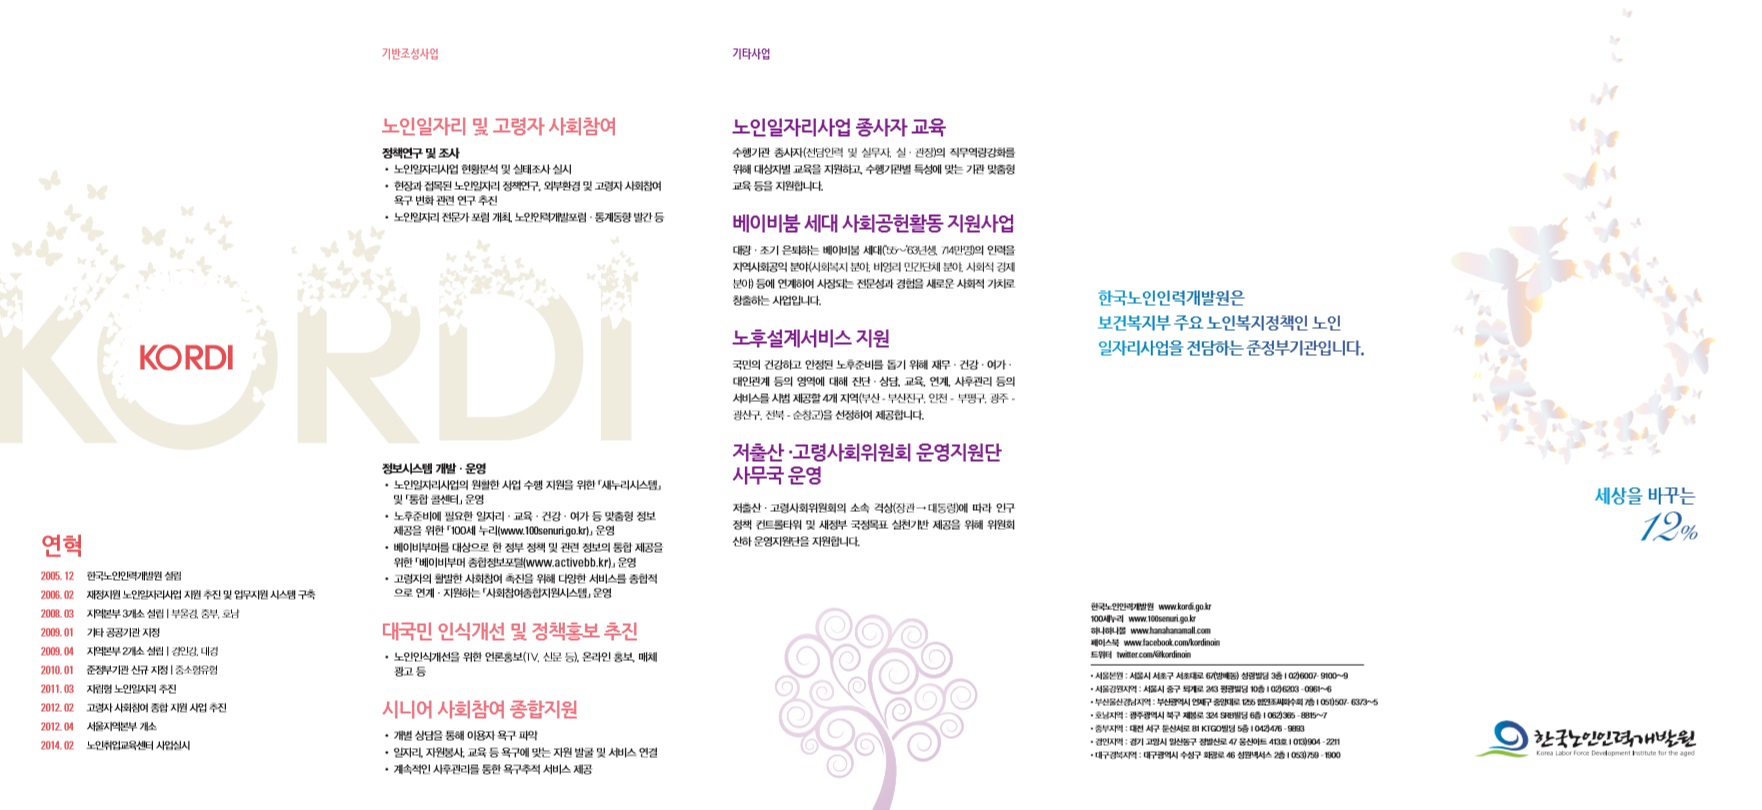 2014년 한국노인인력개발원 소개 브로슈어(국문)